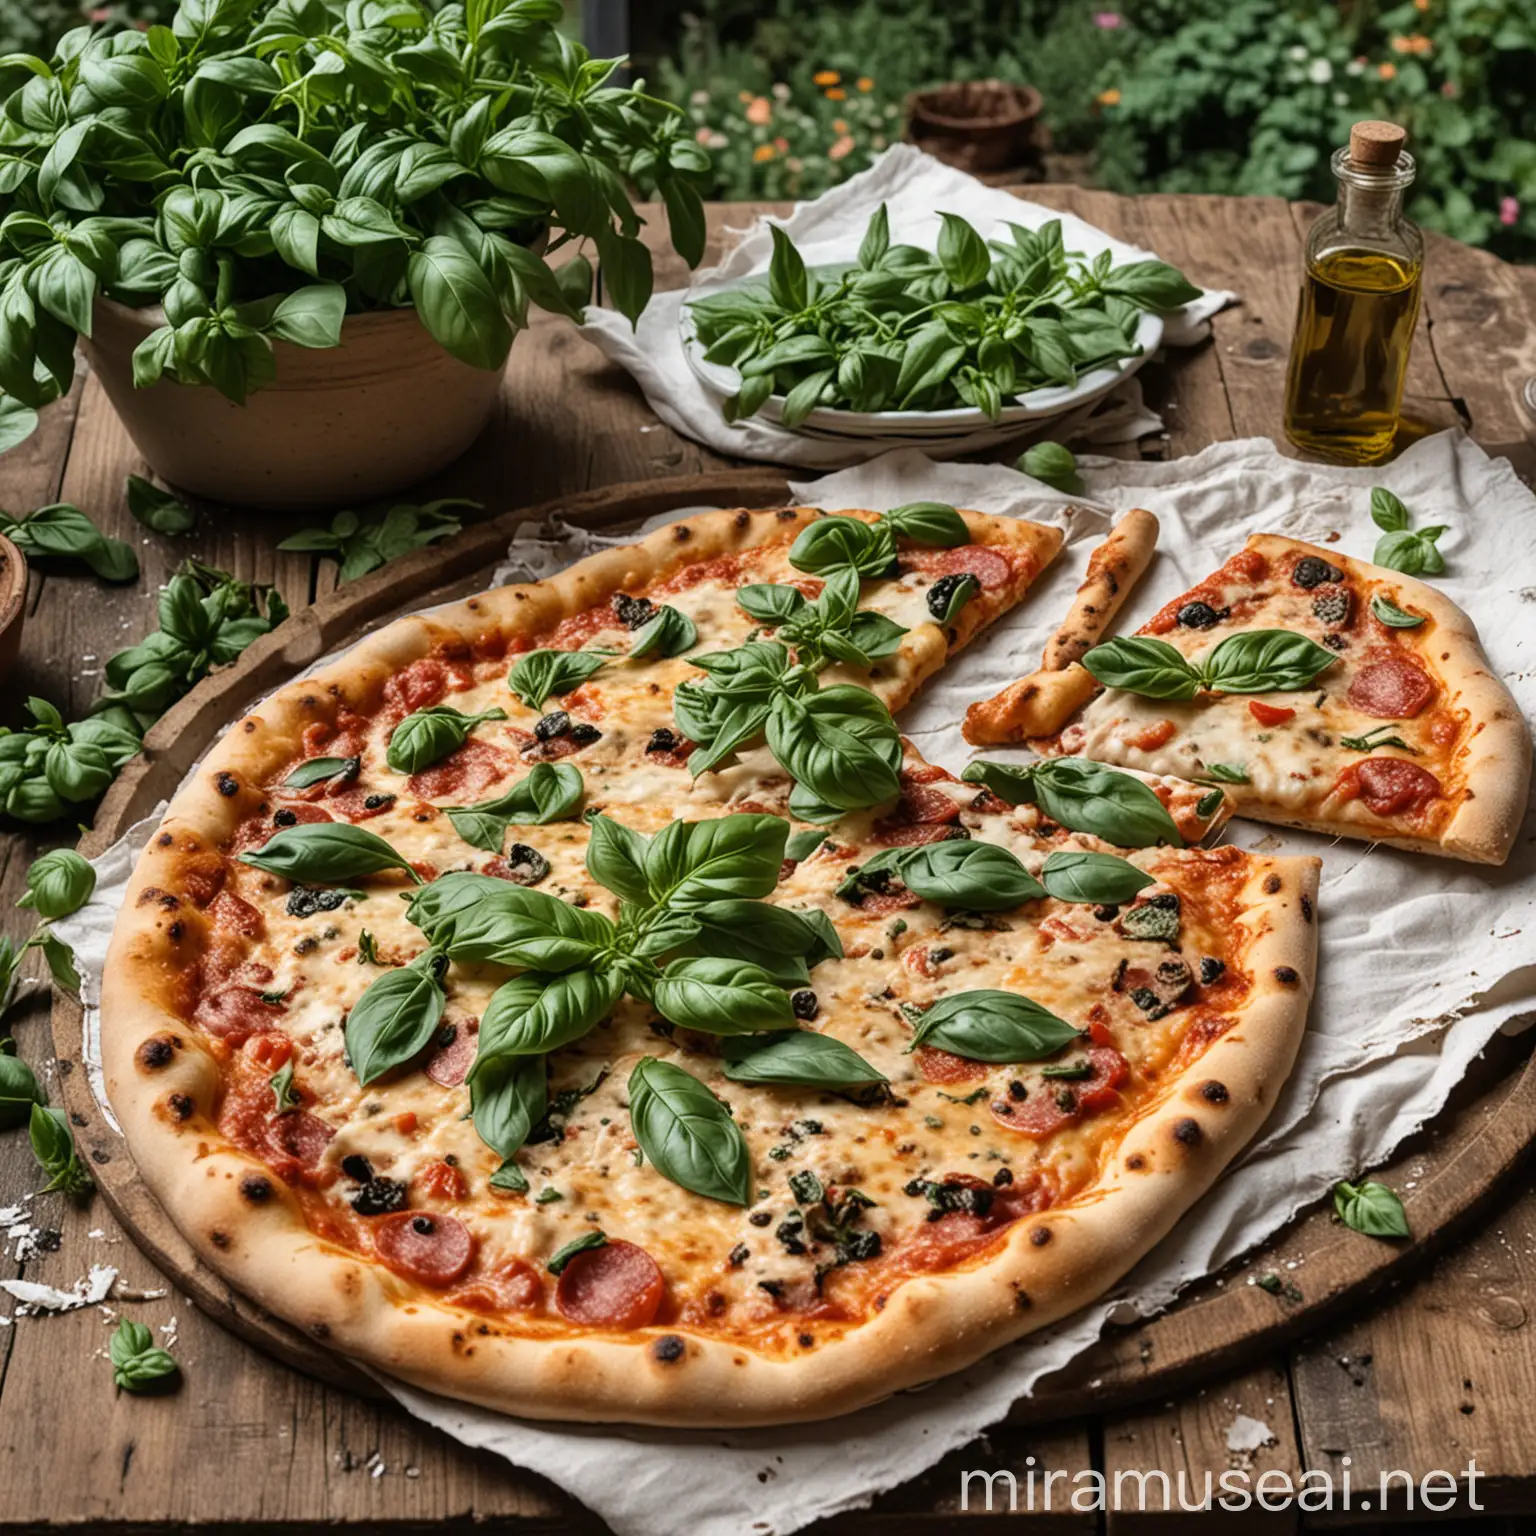 pizza na bardzo starym stole, 2 talerze, a na nich pizza, wokół dużo roślin (bazylii)  w tle oliwa z oliwek, serwetki kwiaty, zdjęcie zrobione za osobą jedzącą pizze. 